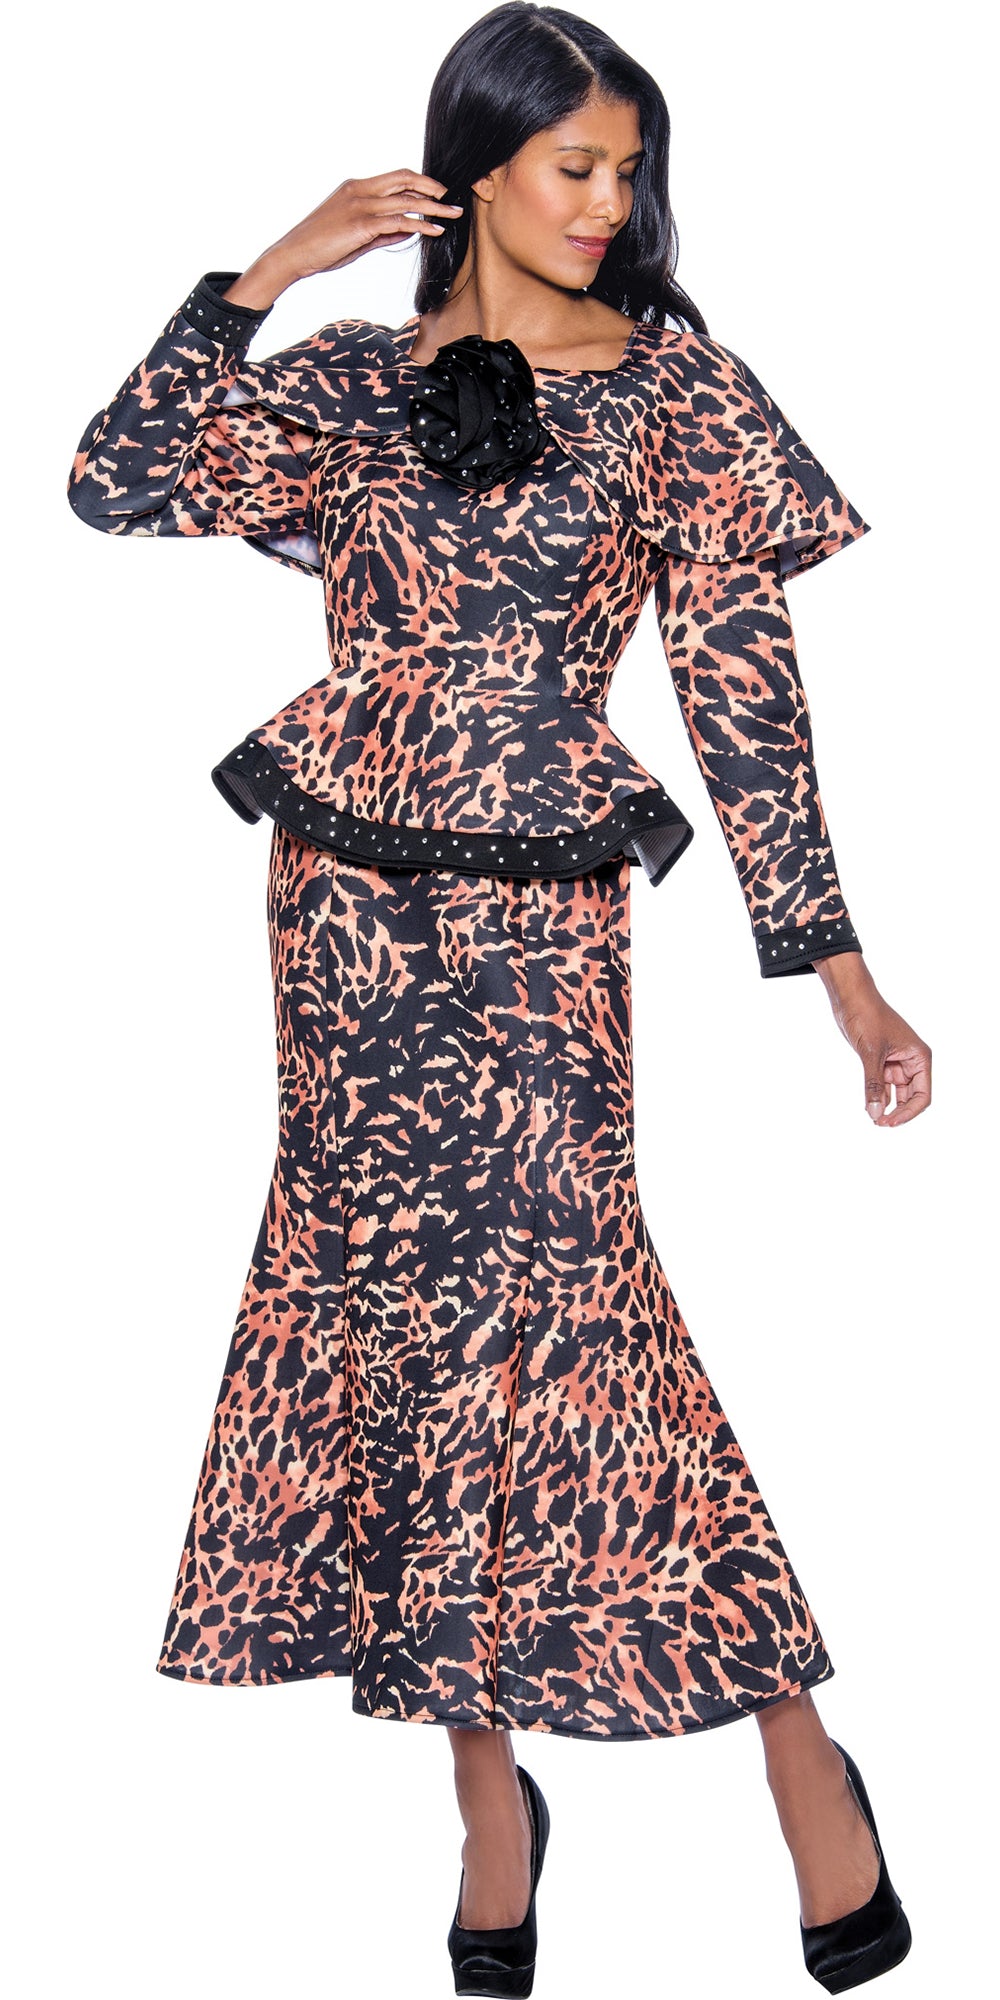 Stellar Looks SL1192 - Animal - Print 2pc Skirt Suit